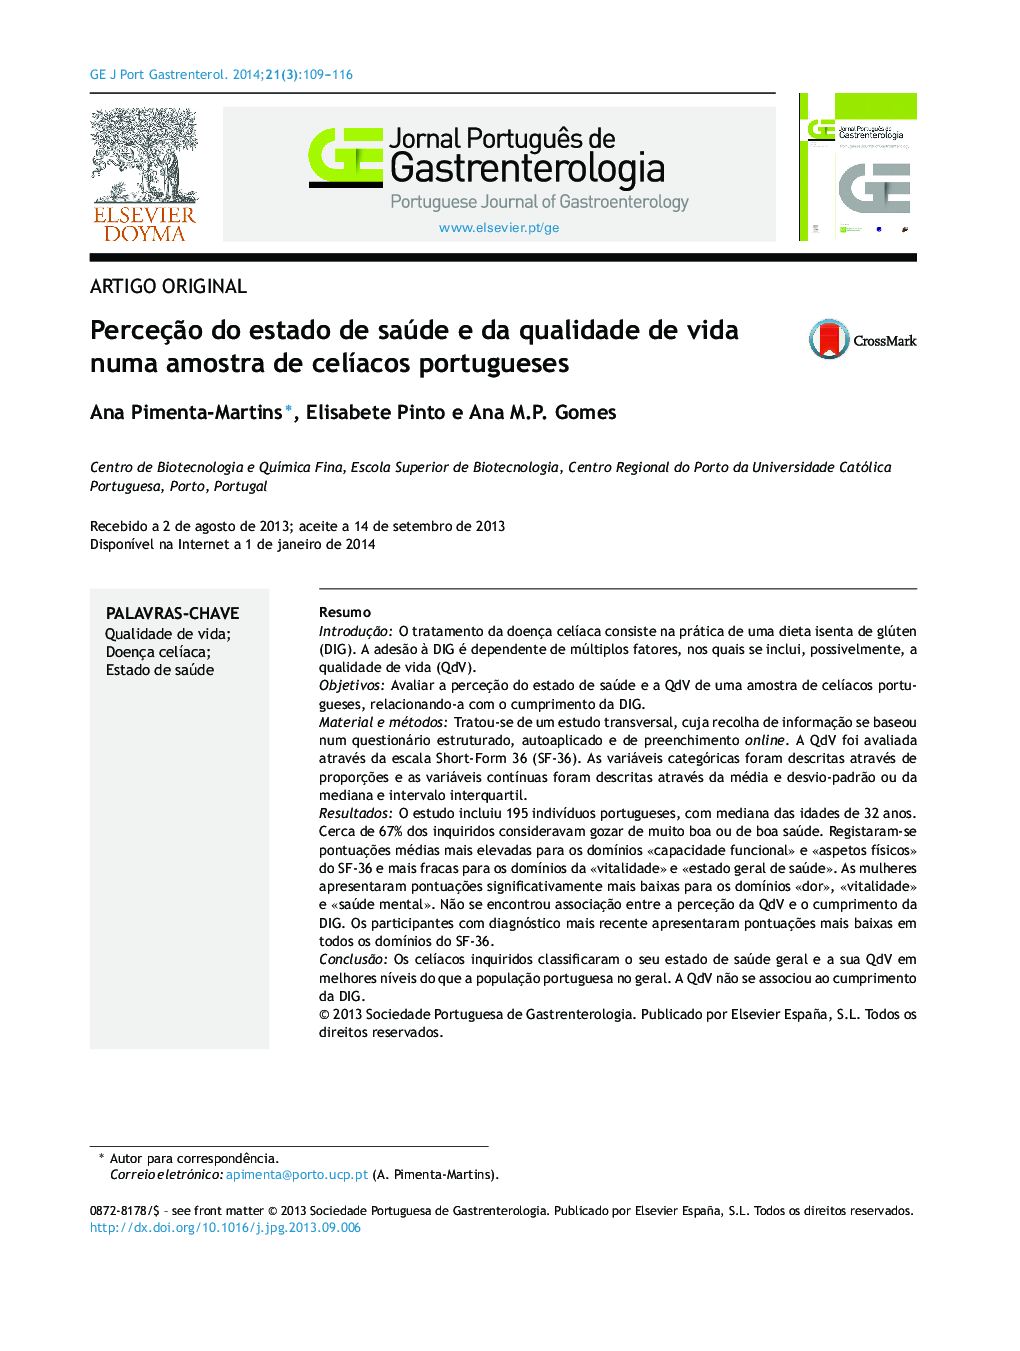 Perceção do estado de saúde e da qualidade de vida numa amostra de celíacos portugueses